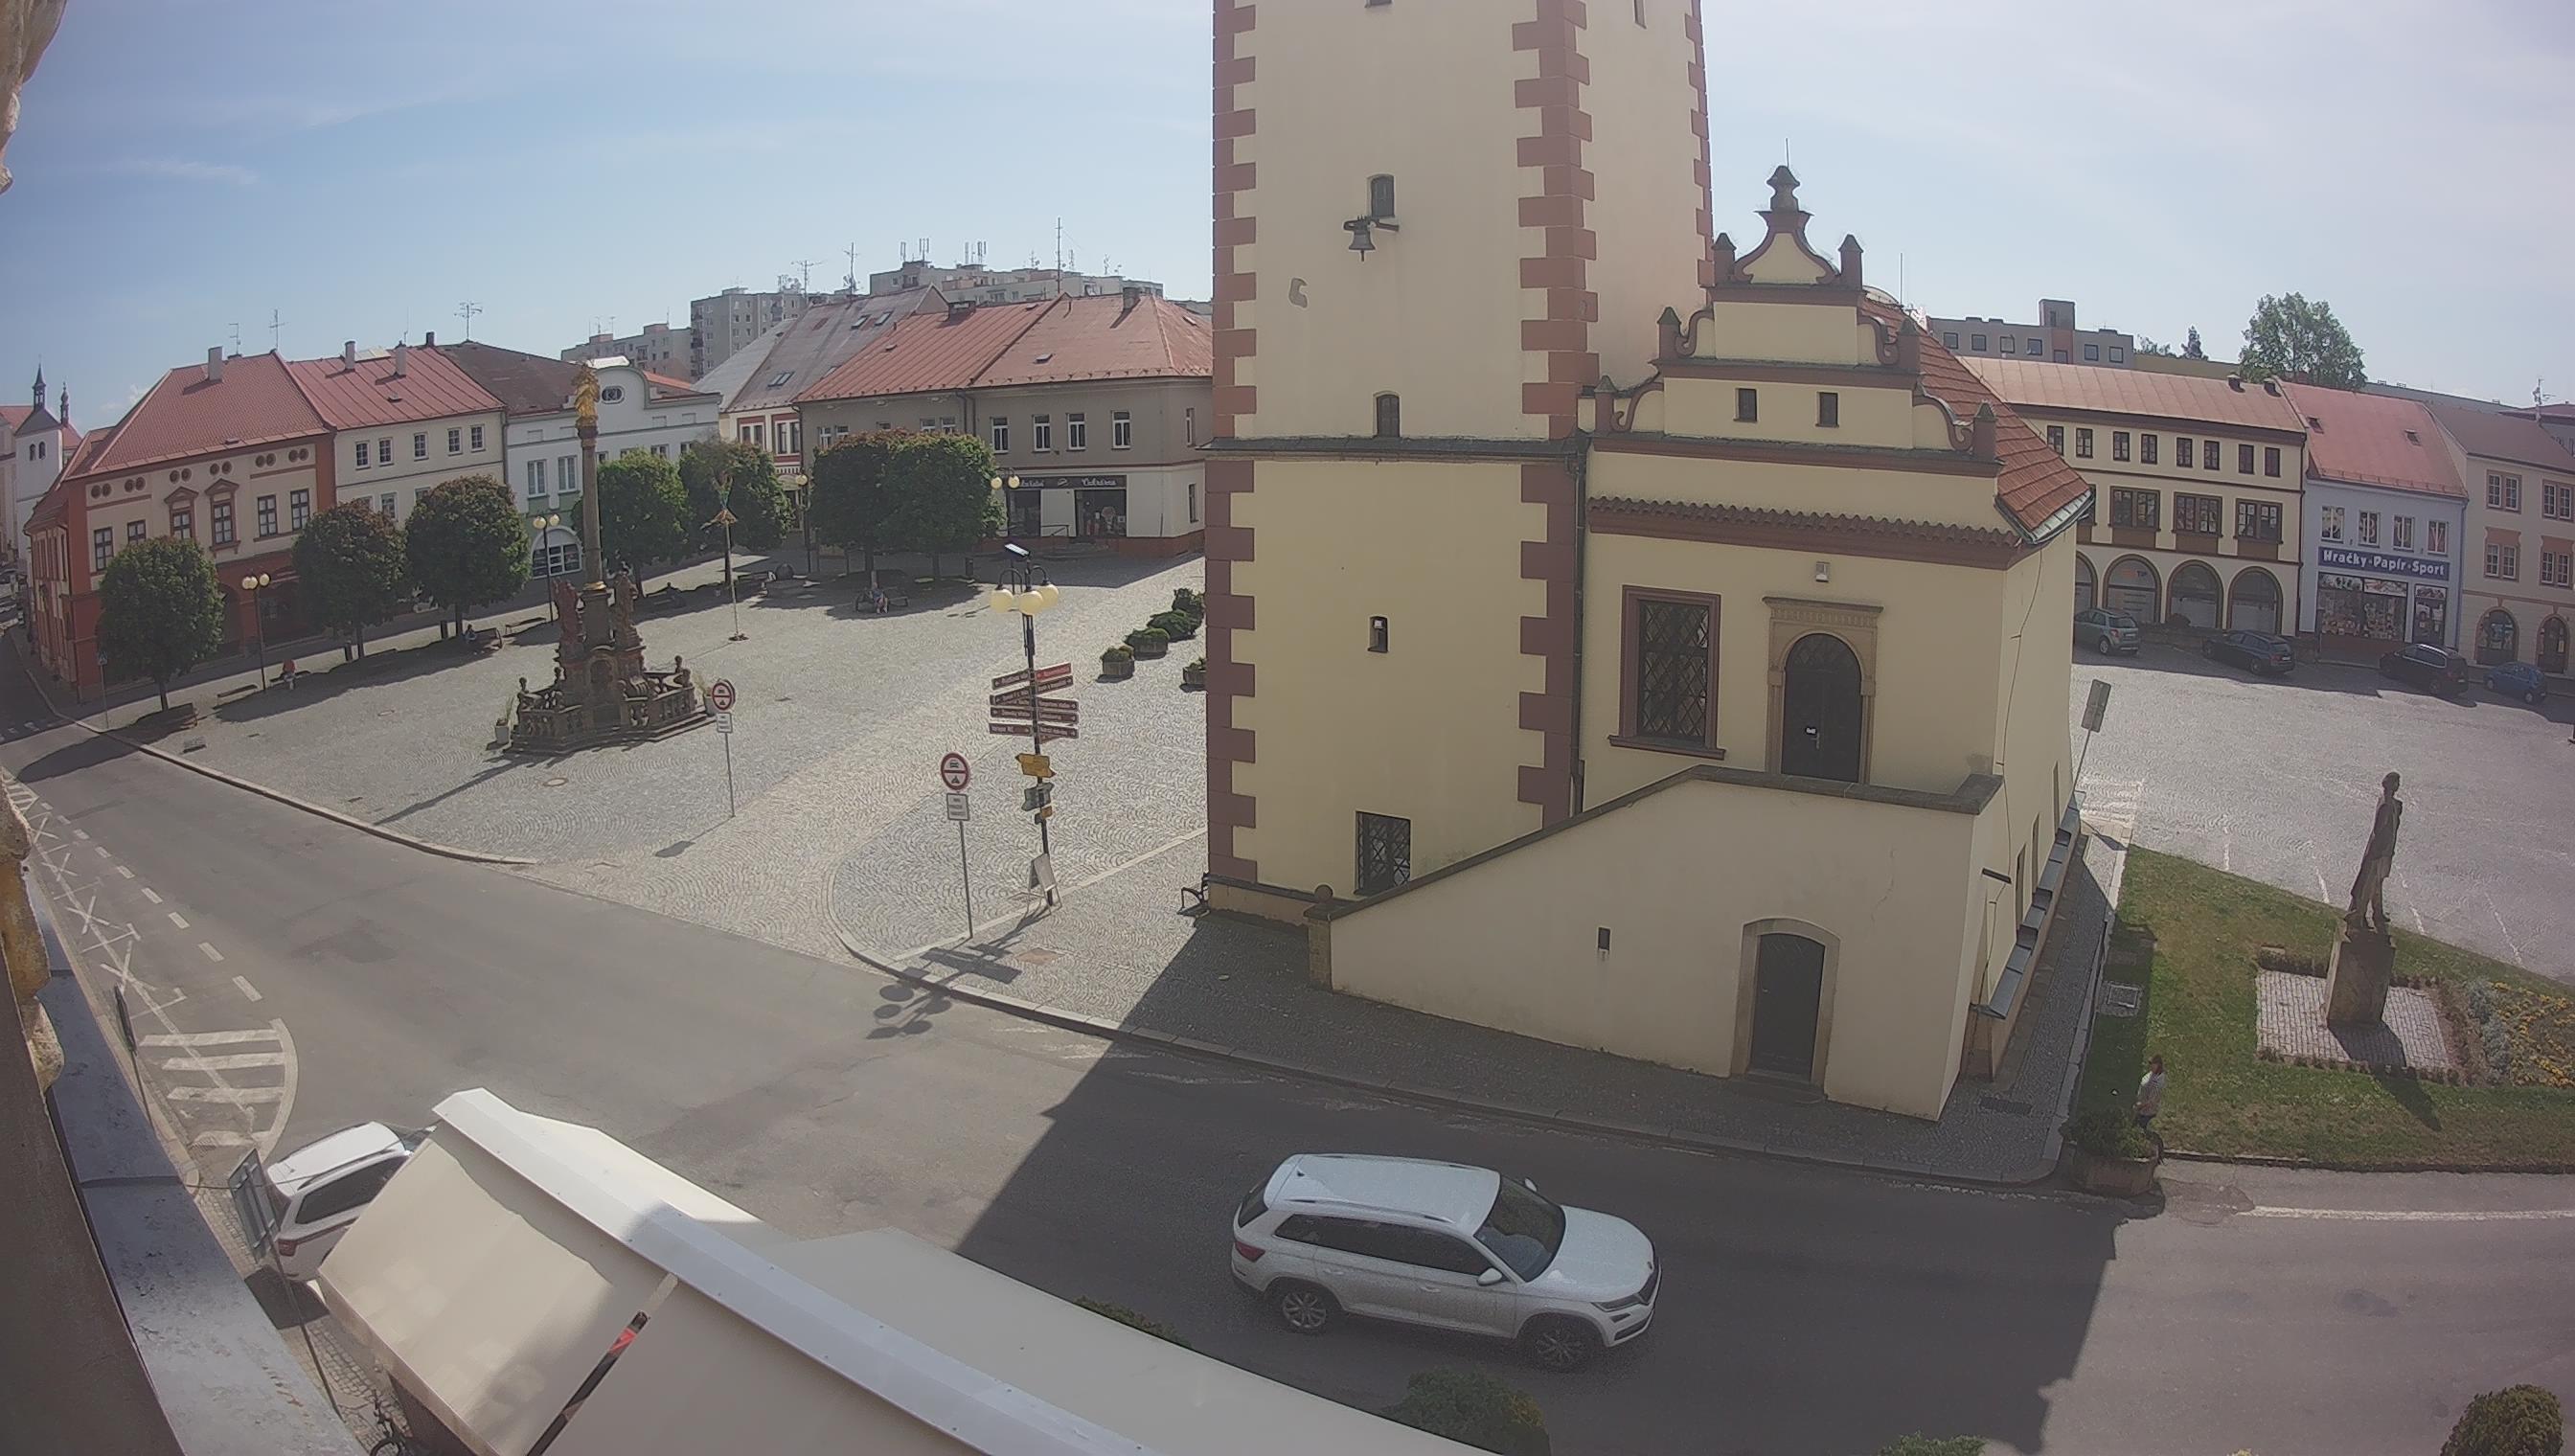 Webcam - Dobruška